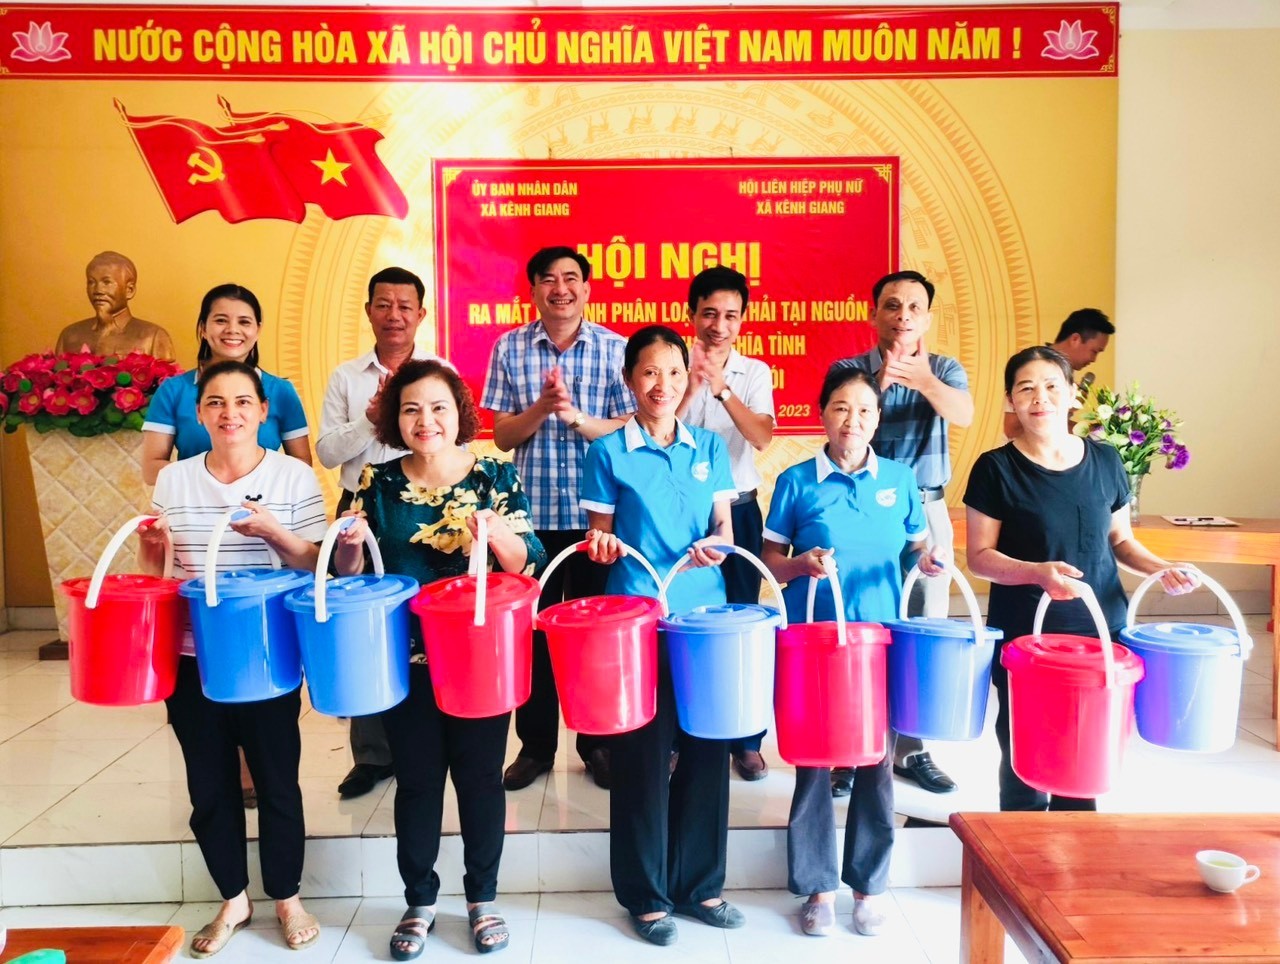 Nhân dân xã Kênh Giang tích cực phân loại rác thải tại nguồn, bảo vệ môi trường nông thôn